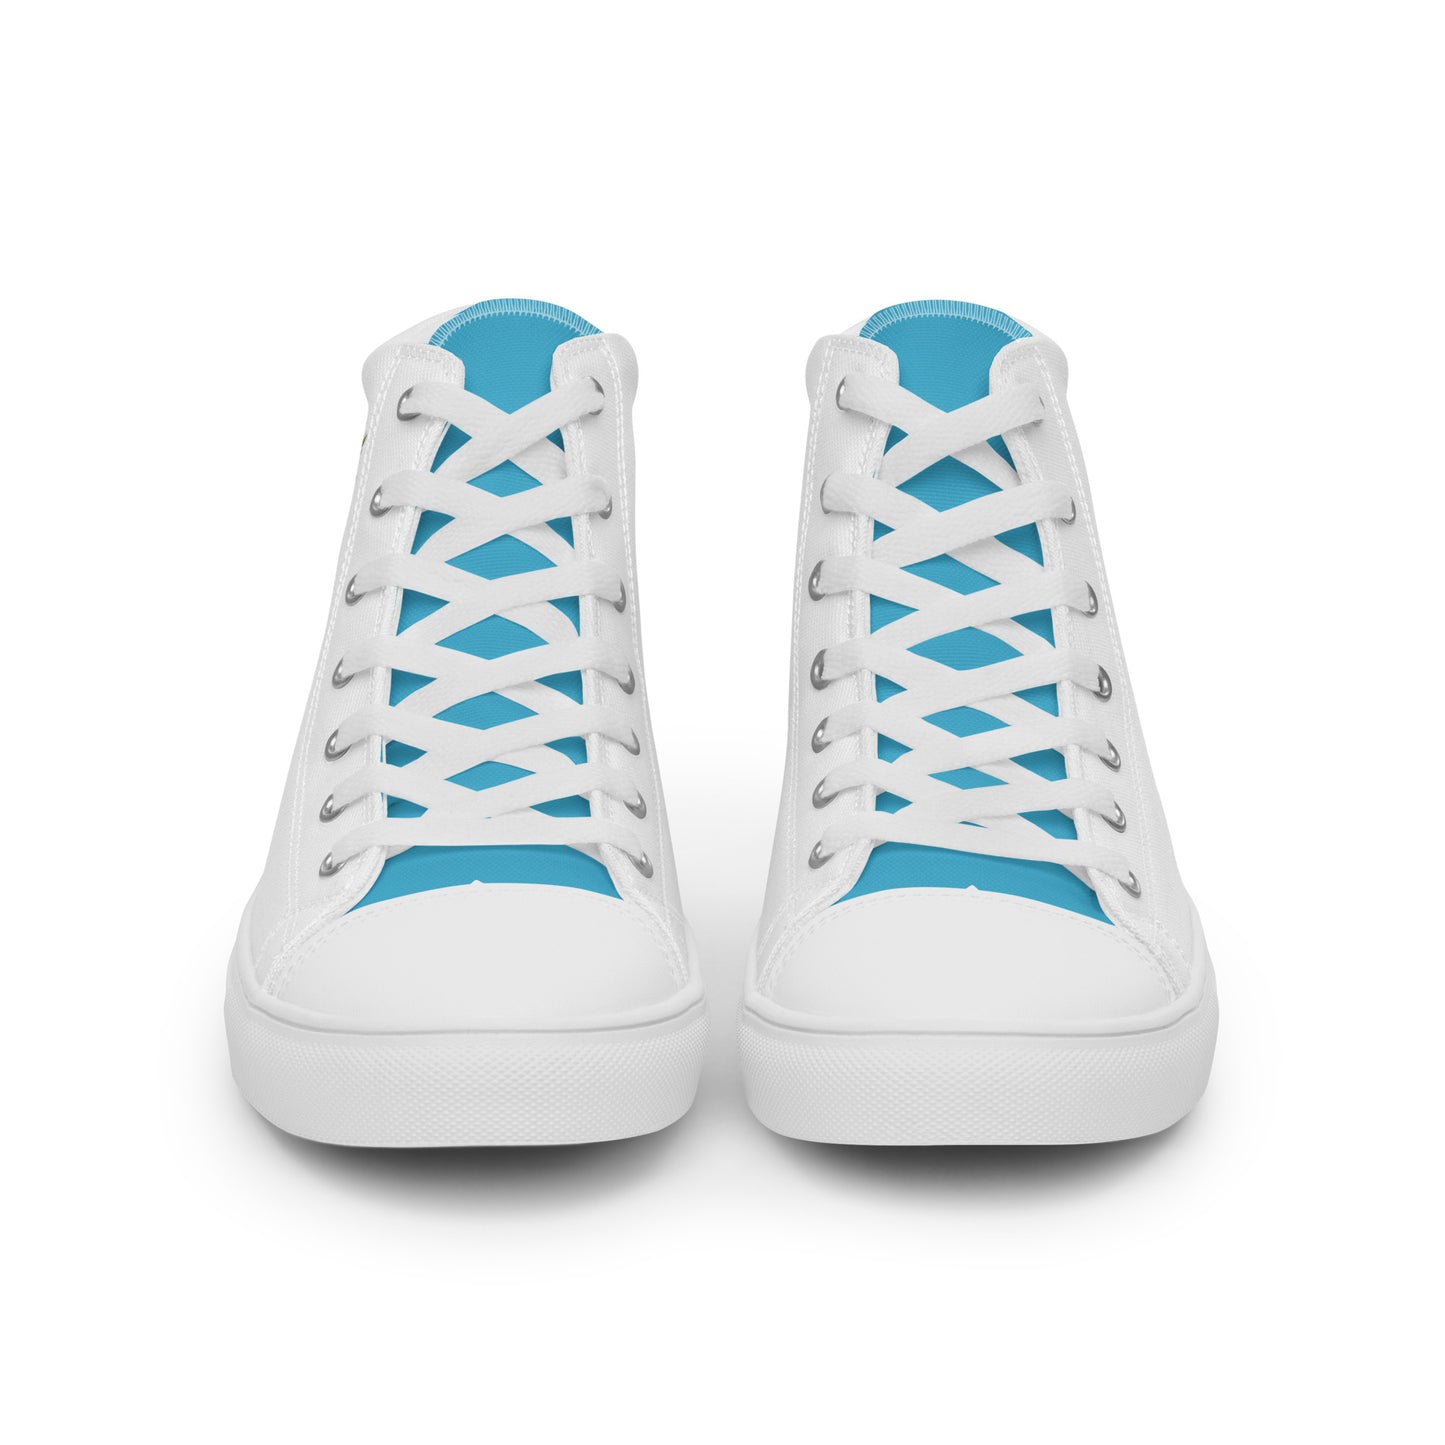 Guatemala - Women - White - High top shoes